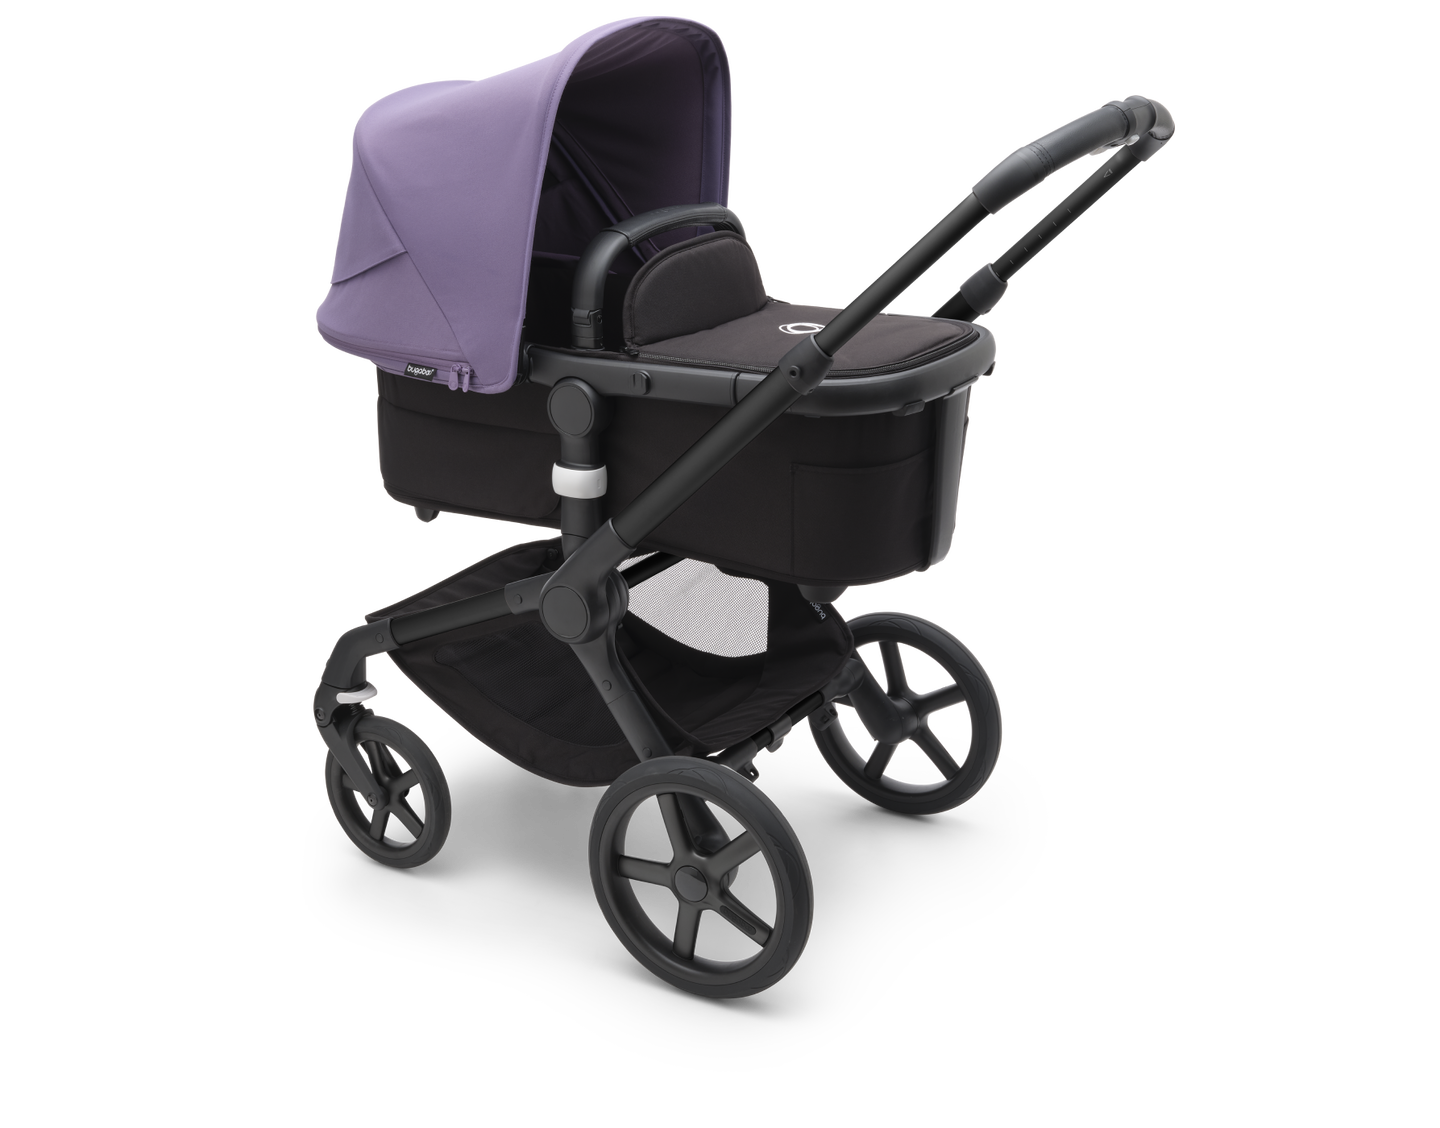 アストロパープルのサンキャノピーを装着したバガブー フォックス 5 全地形対応新生児用ベビーカー。